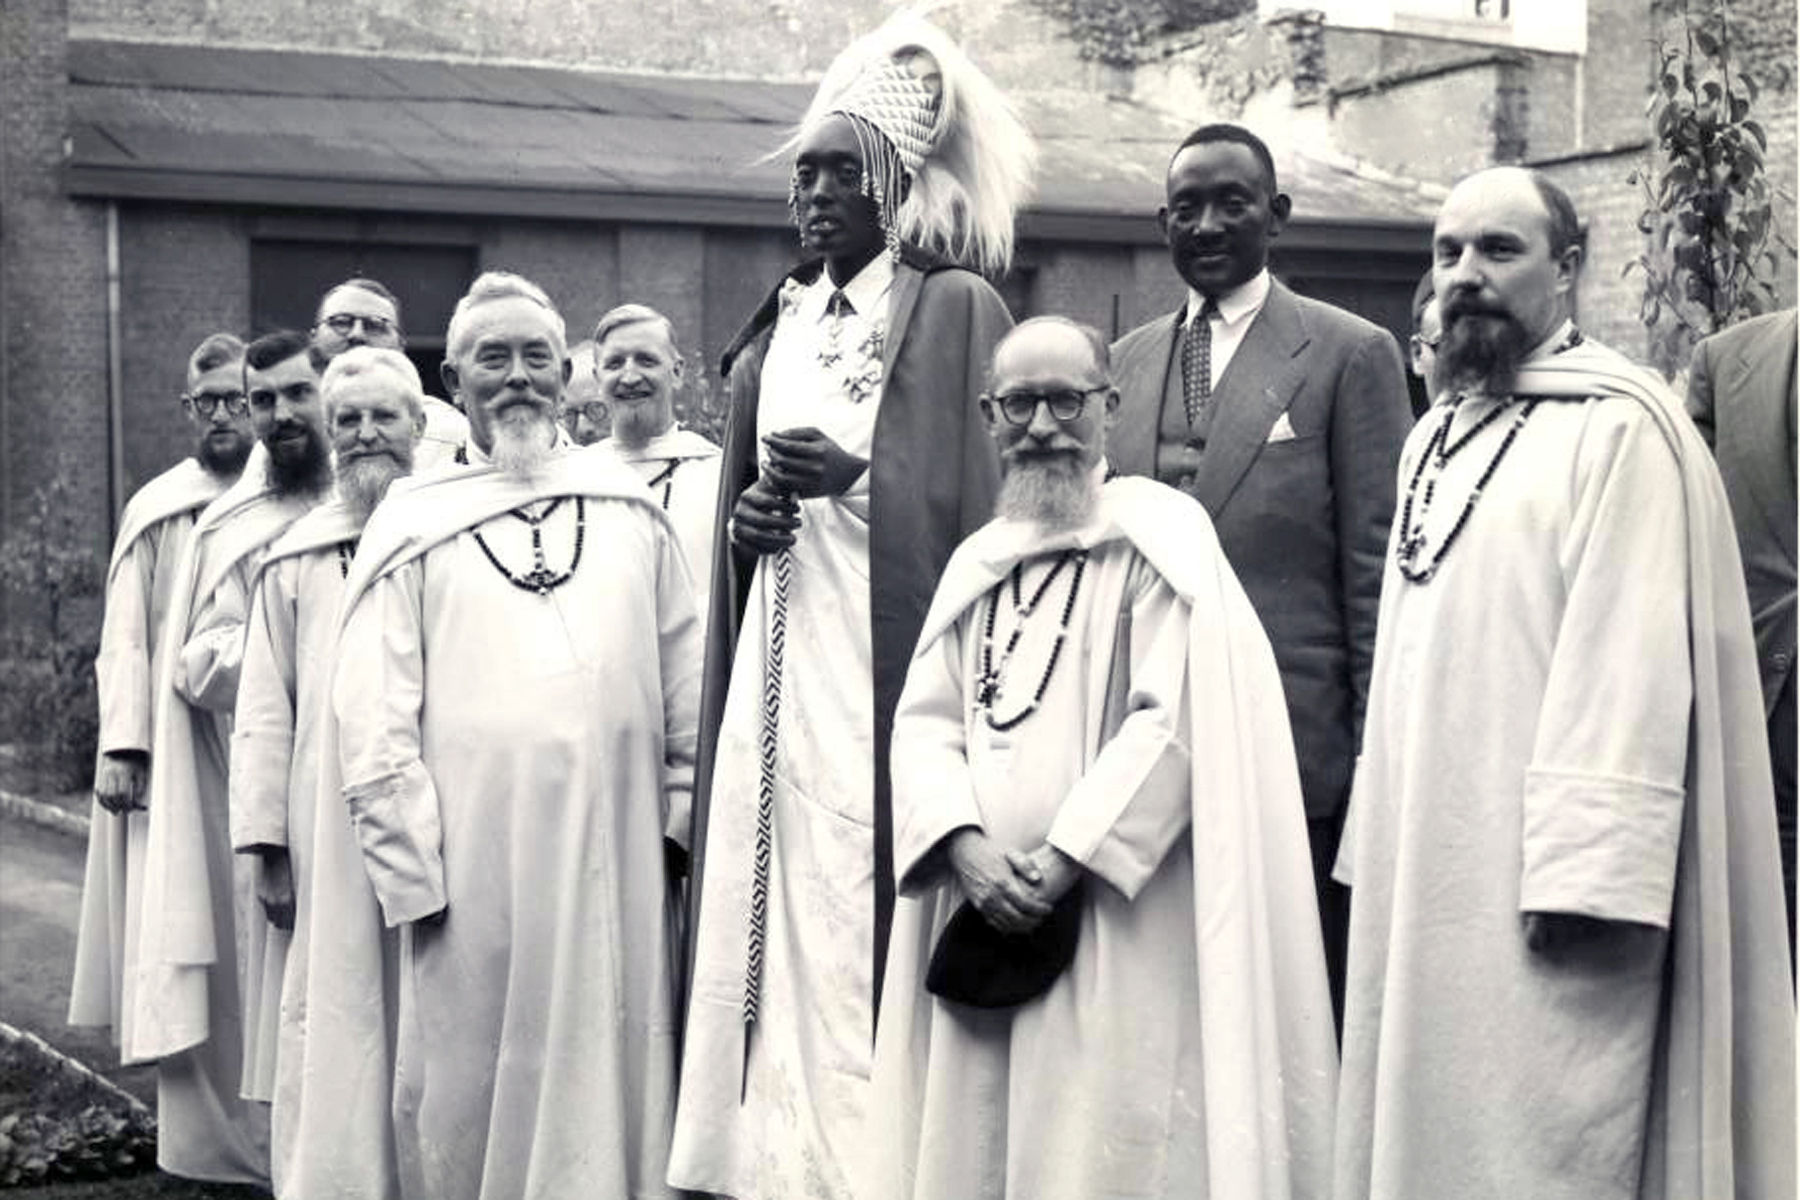 Après la déchéance de Musinga en 1931, Mutara Rudahigwa, un de ses fils fut  désigné comme son successeur par les autorités mandataires belges sous l'influence des missionnaires. Scholastique Mukasonga, Rwanda